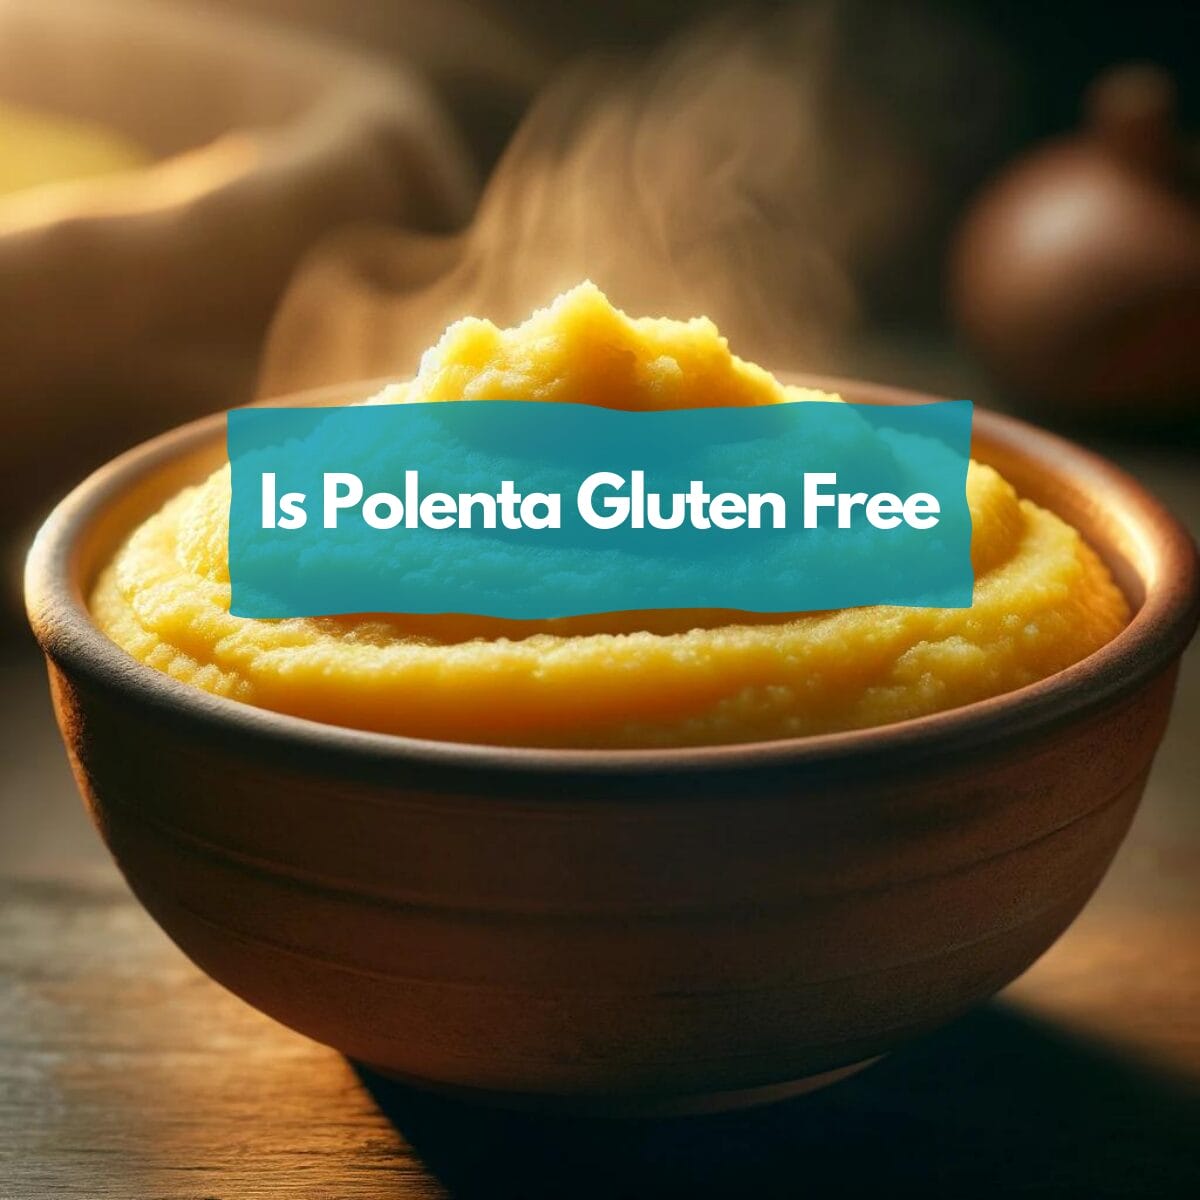 Is polenta gluten free